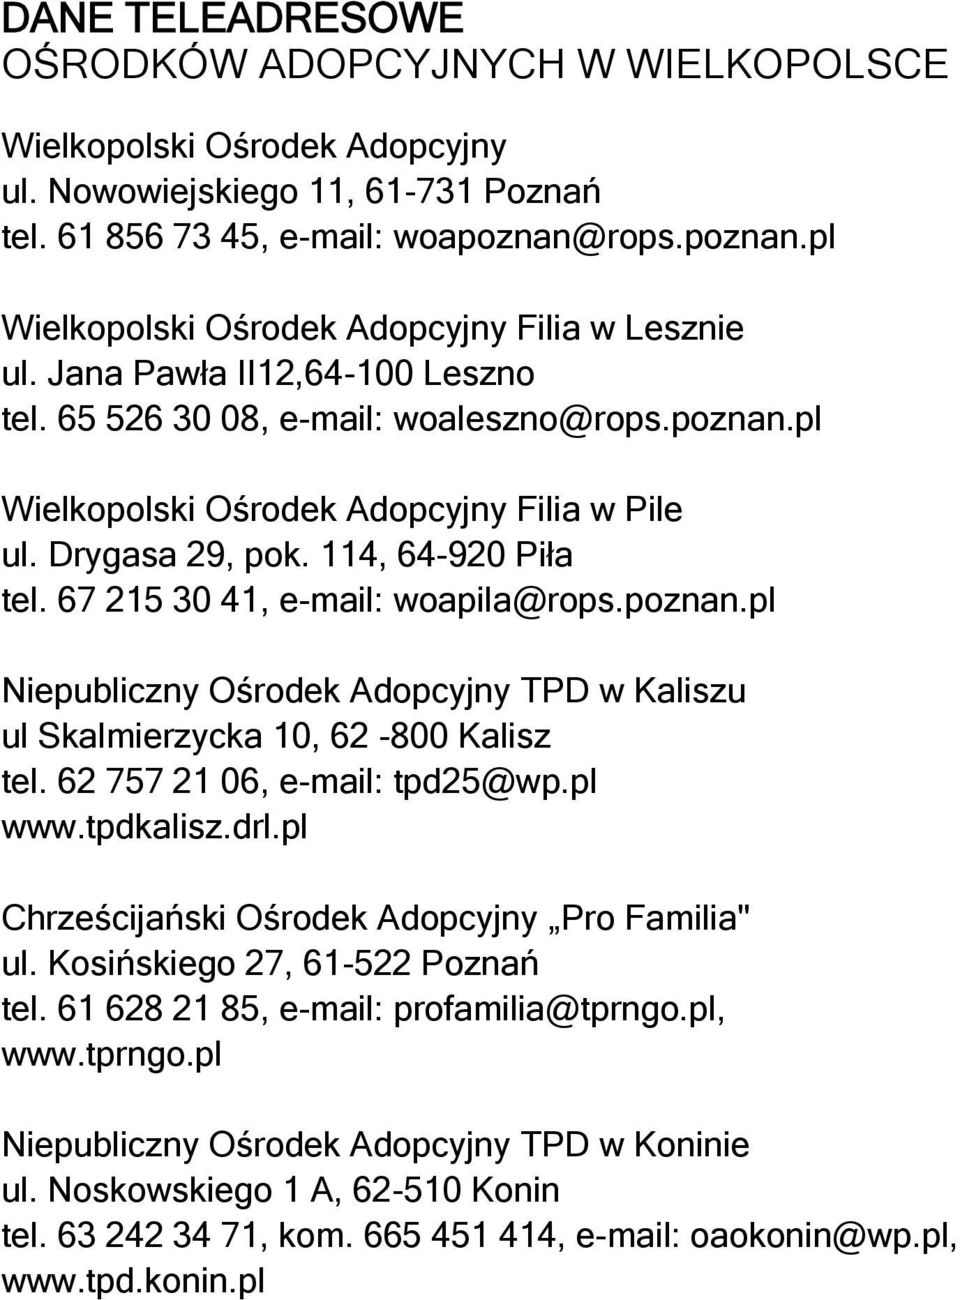 Drygasa 29, pok. 114, 64-920 Piła tel. 67 215 30 41, e-mail: woapila@rops.poznan.pl Niepubliczny Ośrodek Adopcyjny TPD w Kaliszu ul Skalmierzycka 10, 62-800 Kalisz tel. 62 757 21 06, e-mail: tpd25@wp.